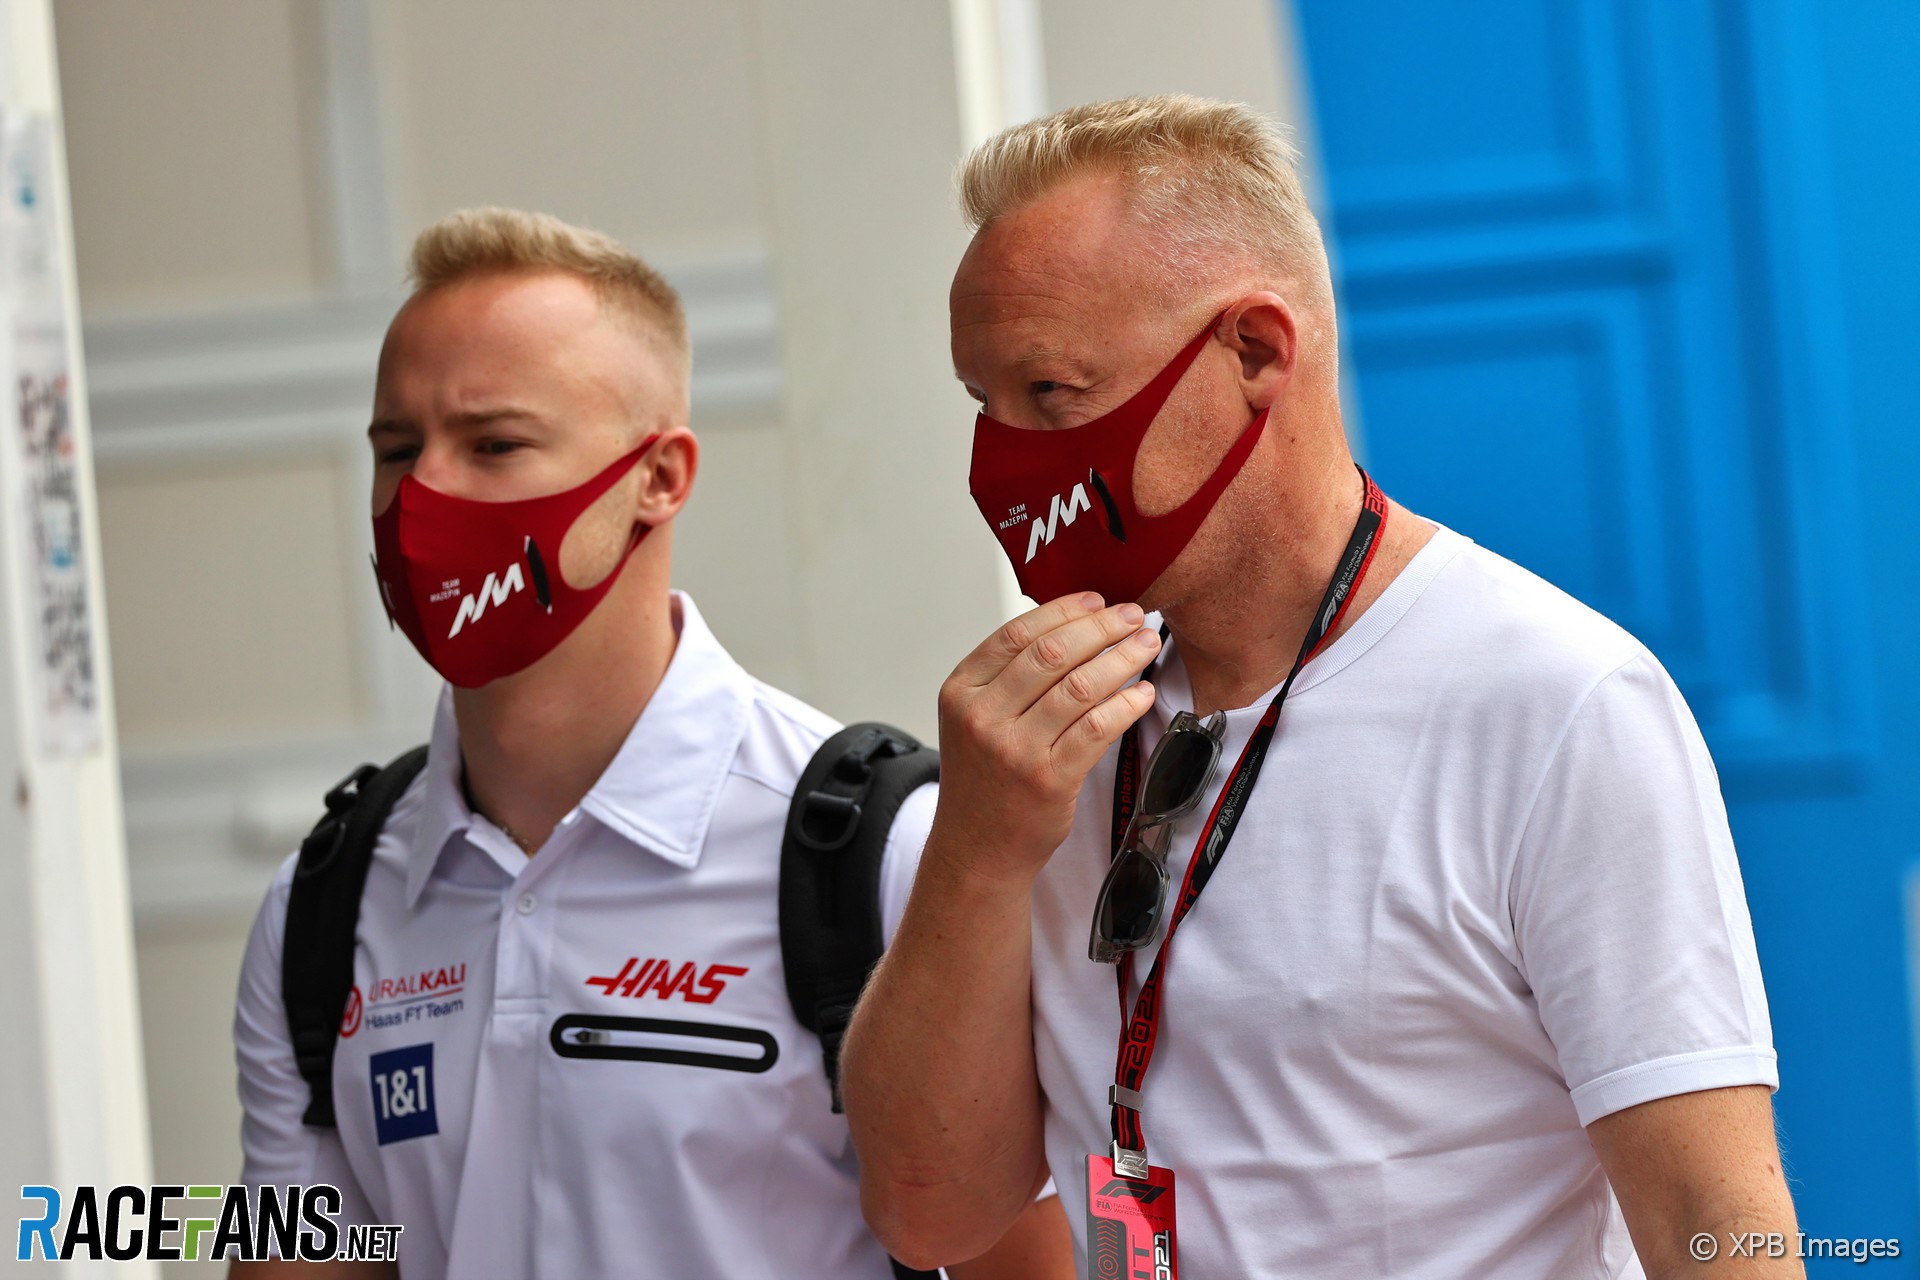 Uralkali memperingatkan Haas bahwa itu akan menarik sponsor untuk mobil Mazepin di RaceFans 2021